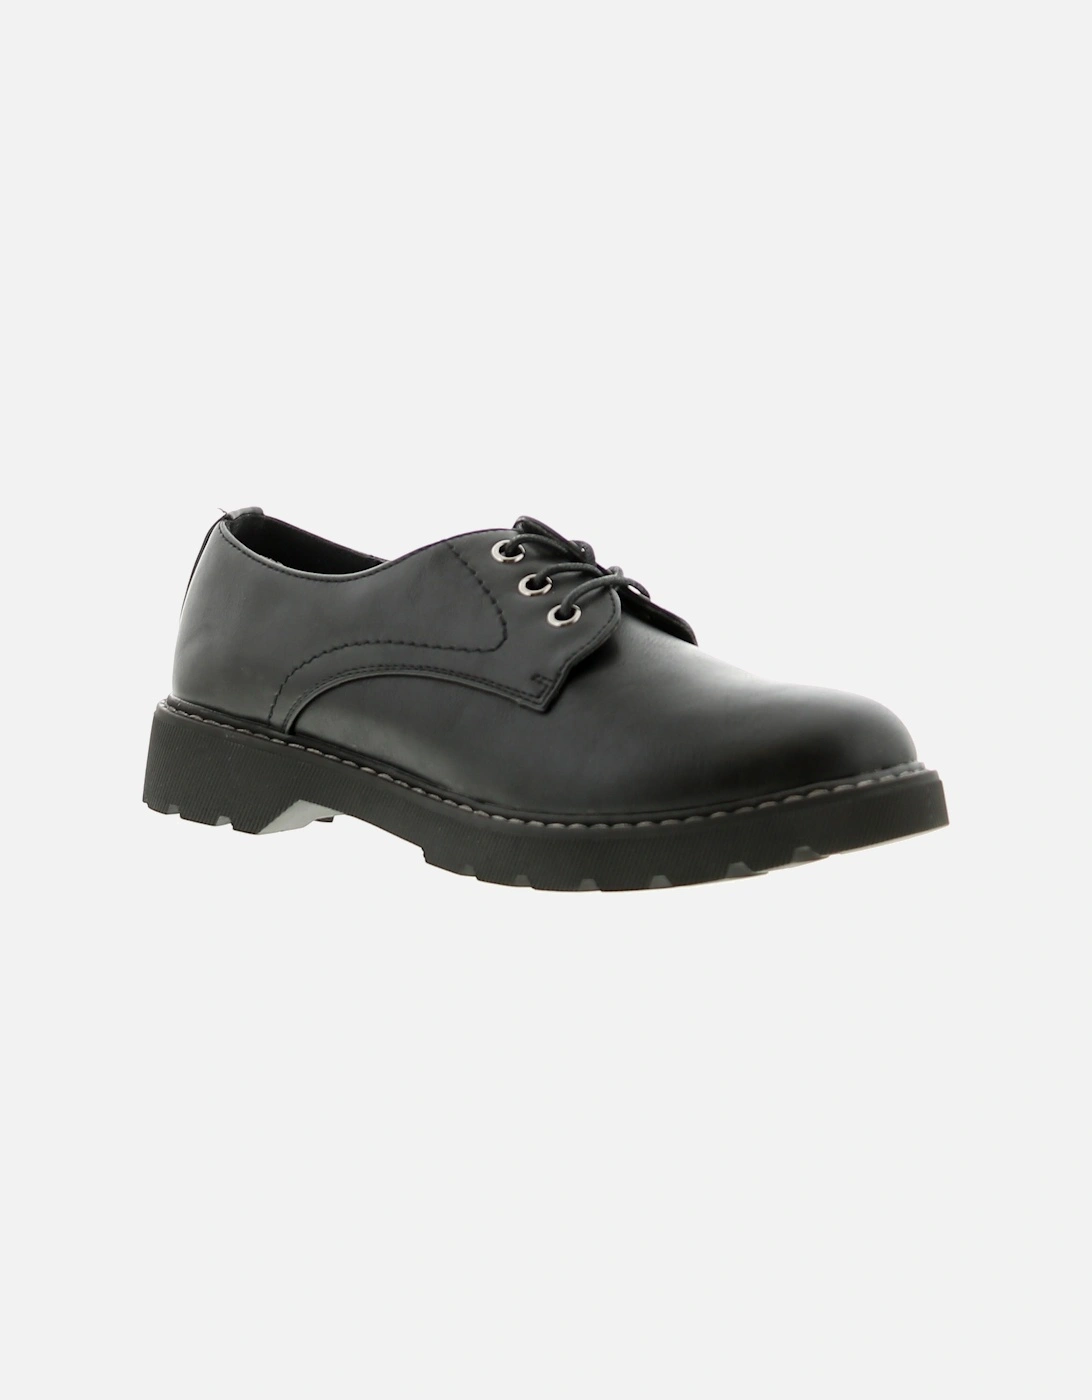 Womens Flat Shoes Katala Lace Up black UK Size, 6 of 5